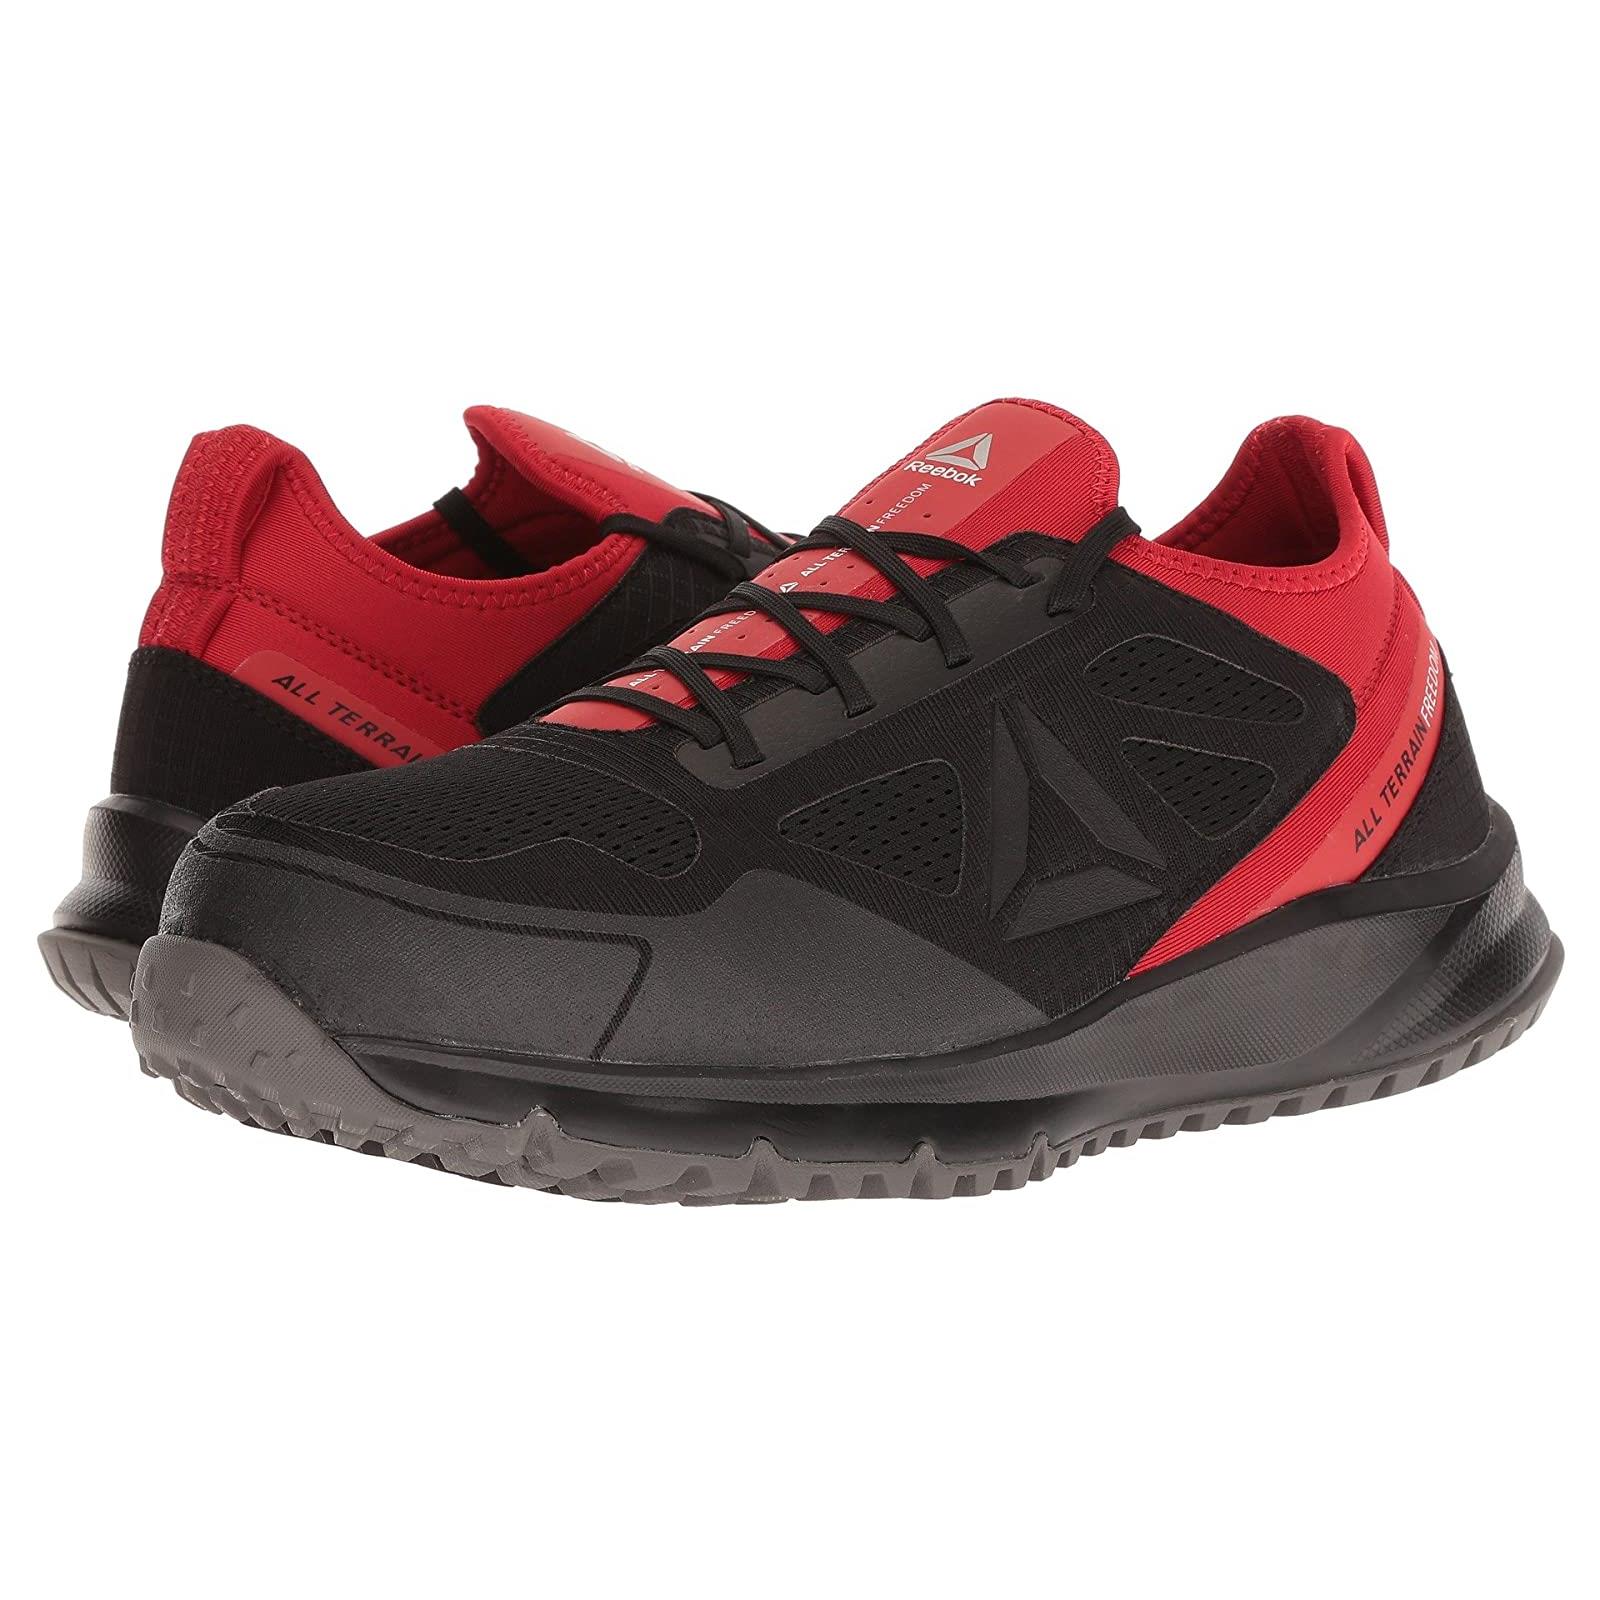 Man`s Sneakers Athletic Shoes Reebok Work All Terrain Work Primal Red/Black